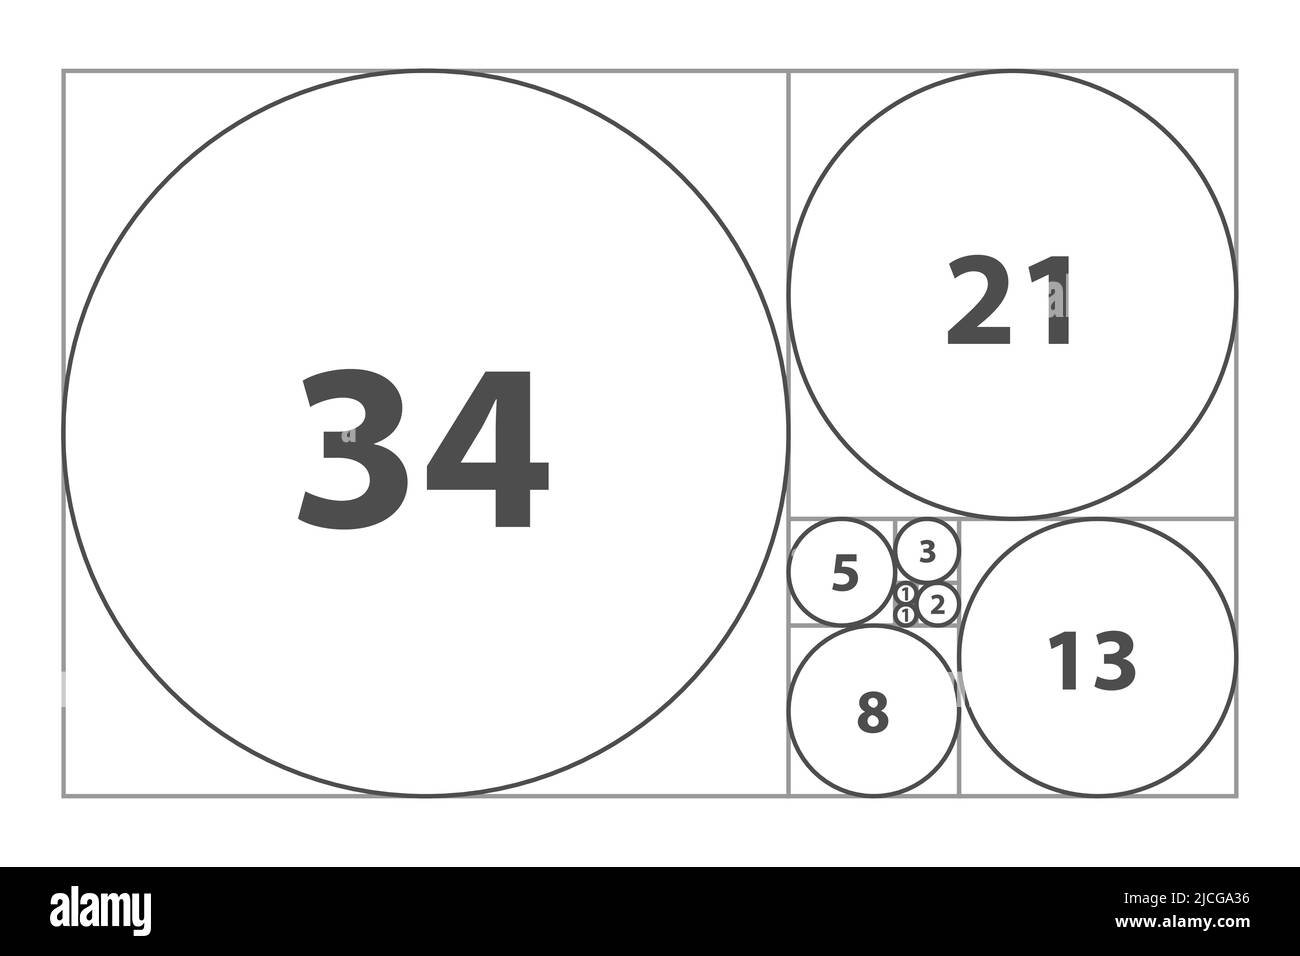 Sequenza di cerchi Fibonacci. Concetto geometrico del rapporto d'oro. Illustrazione vettoriale. Illustrazione Vettoriale